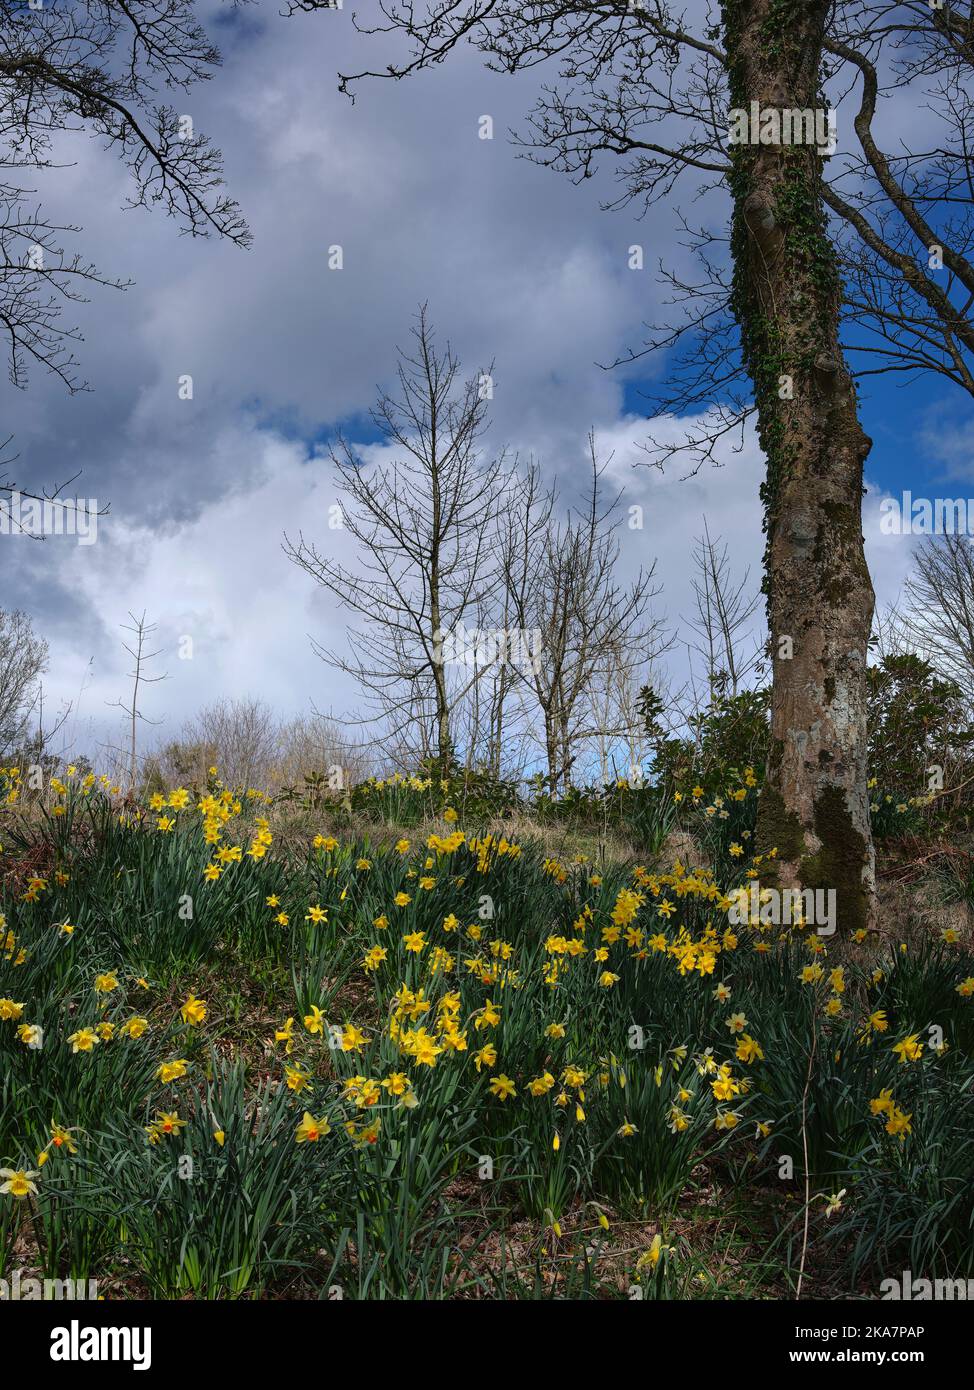 Une moquette de jonquilles de printemps s'aligne sur une allée de bois. Skipness Tarbert, Argyll et Bute. Écosse Banque D'Images